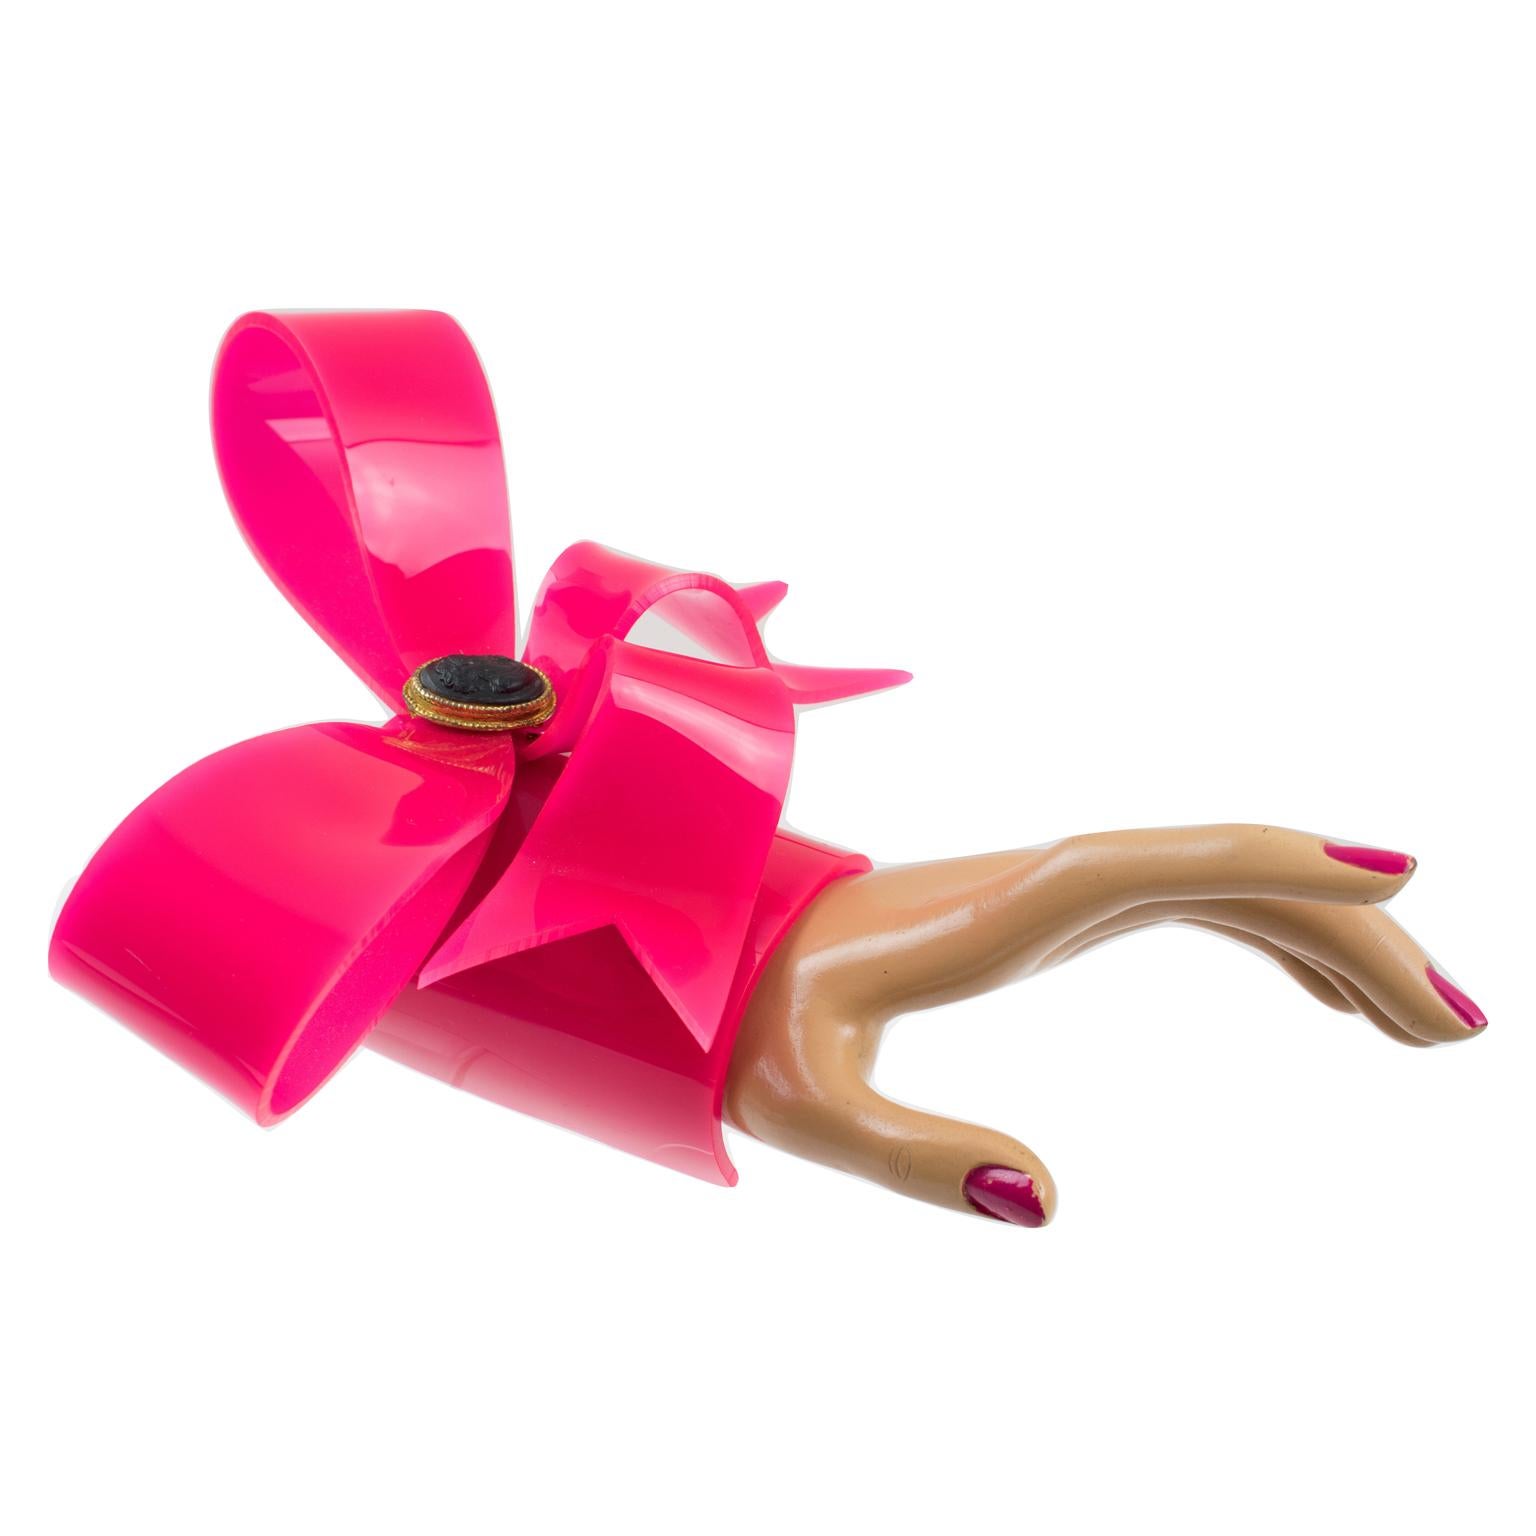 Vivienne Westwood Prototype Cuff Bangle Bracelet Pink Acrylic Bow 5